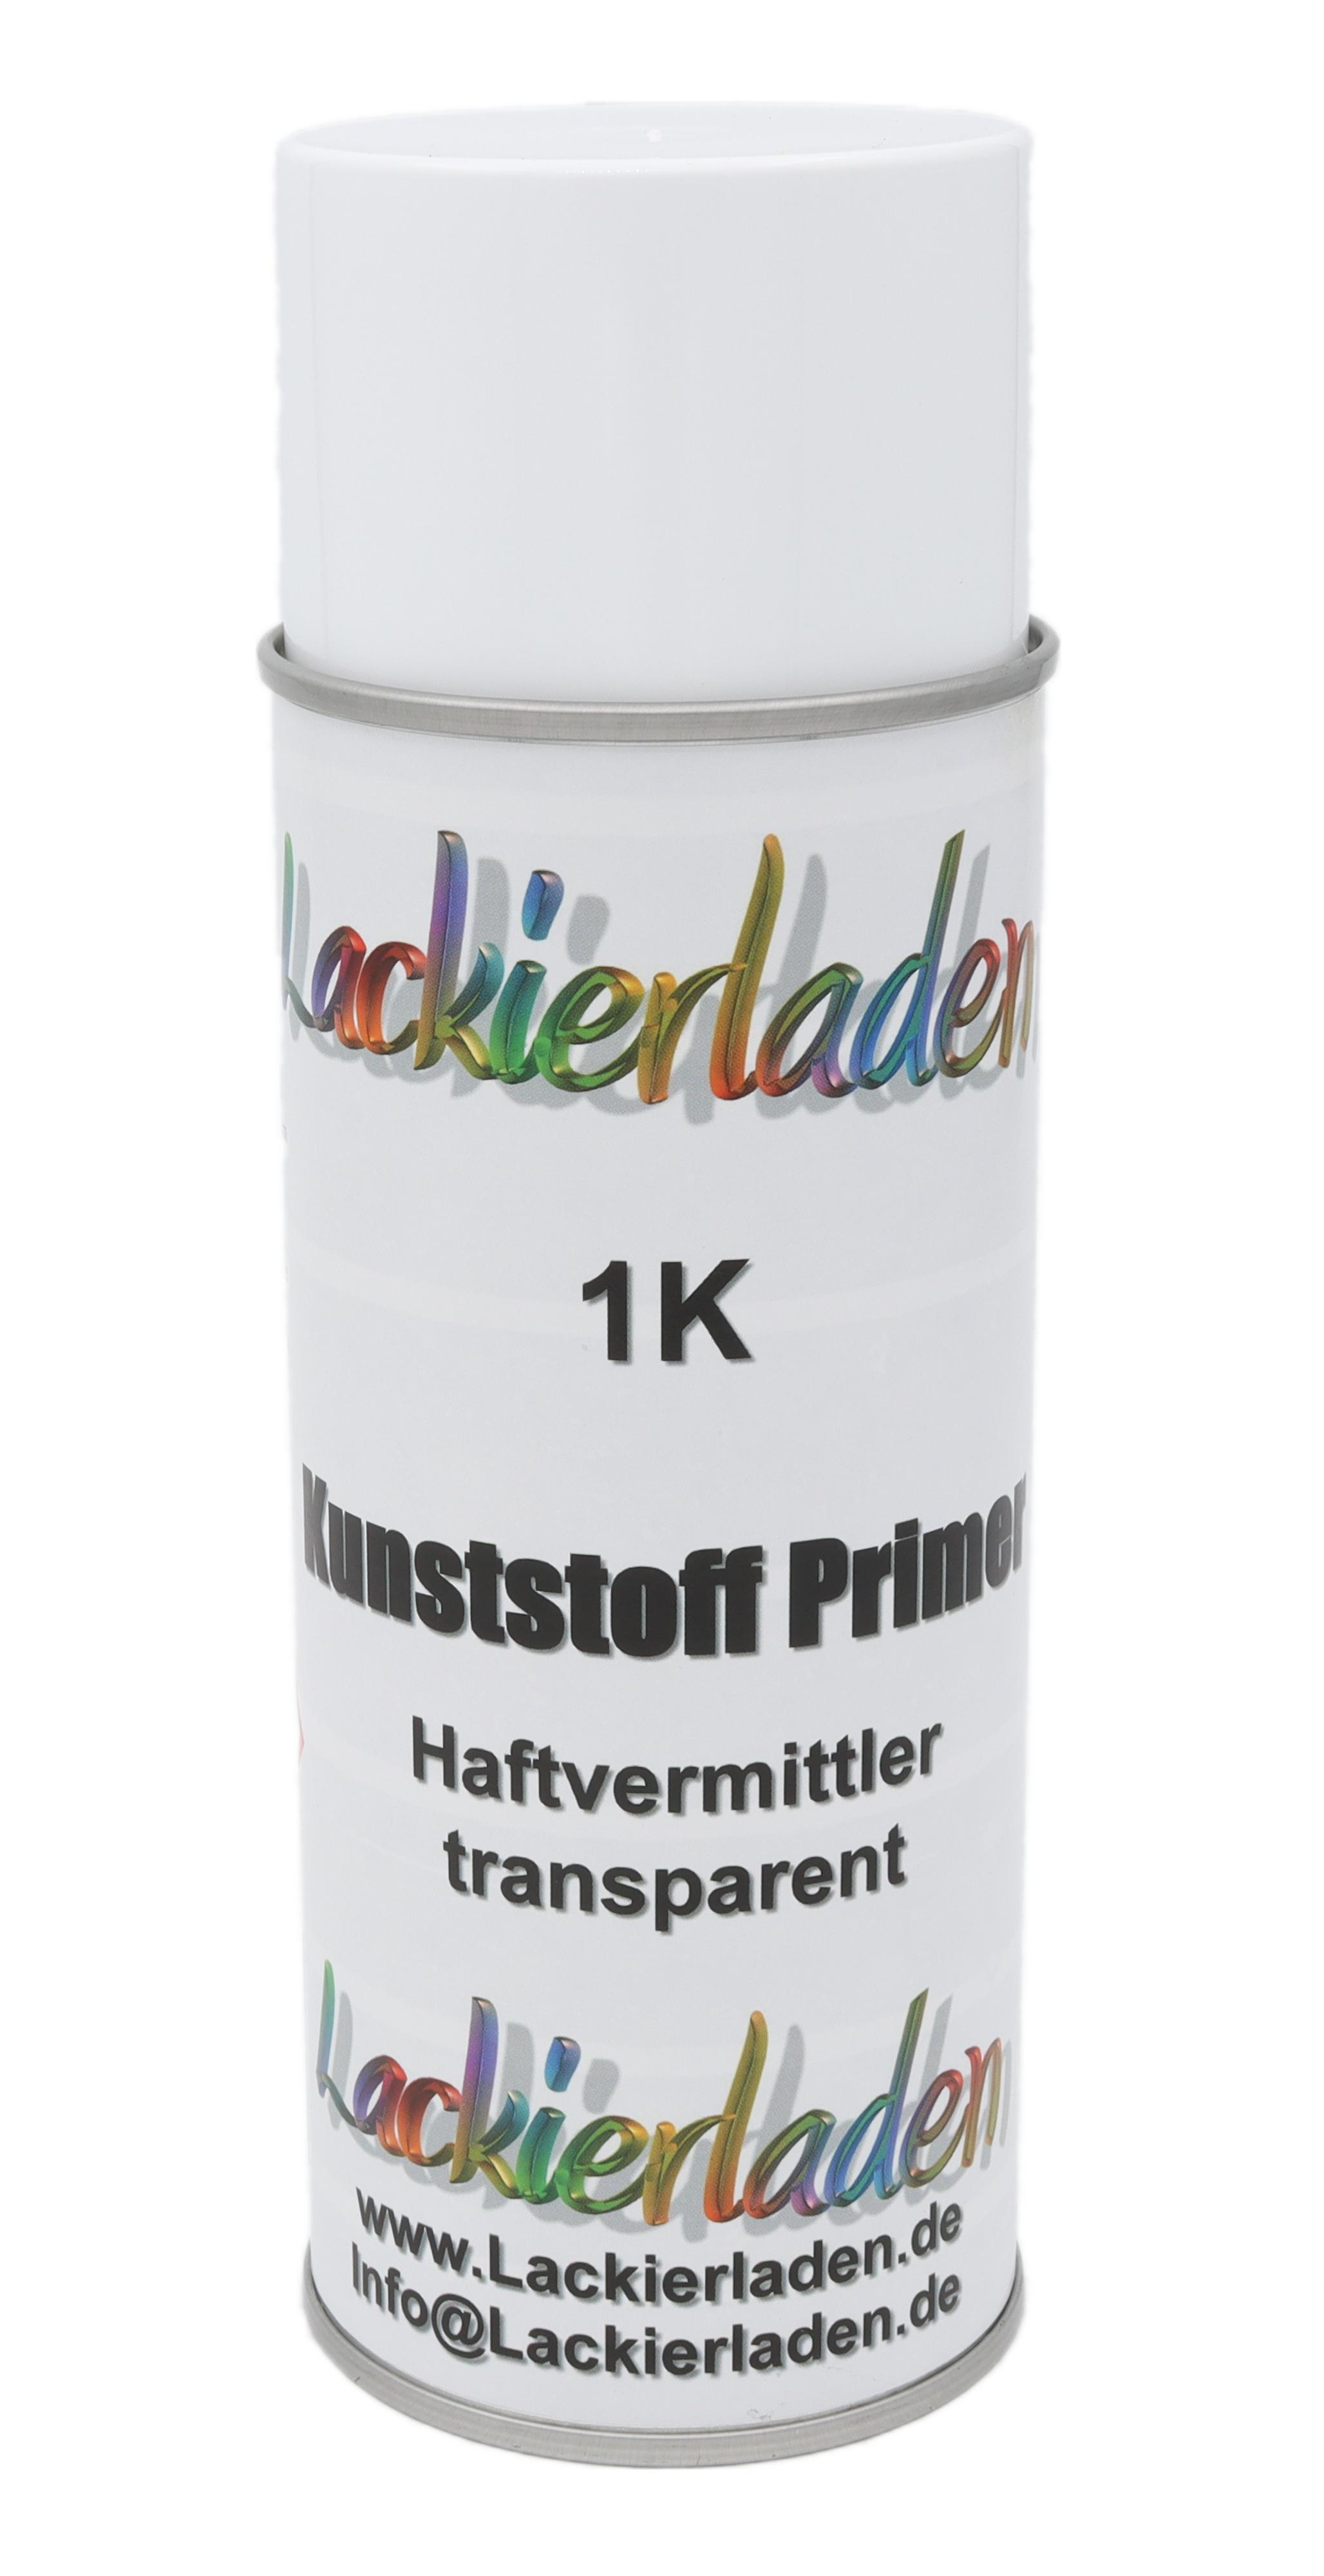 Spraydose Kunststoff Primer 400 ml | Sprühdose Kunststoffgrundierung Haftvermittler